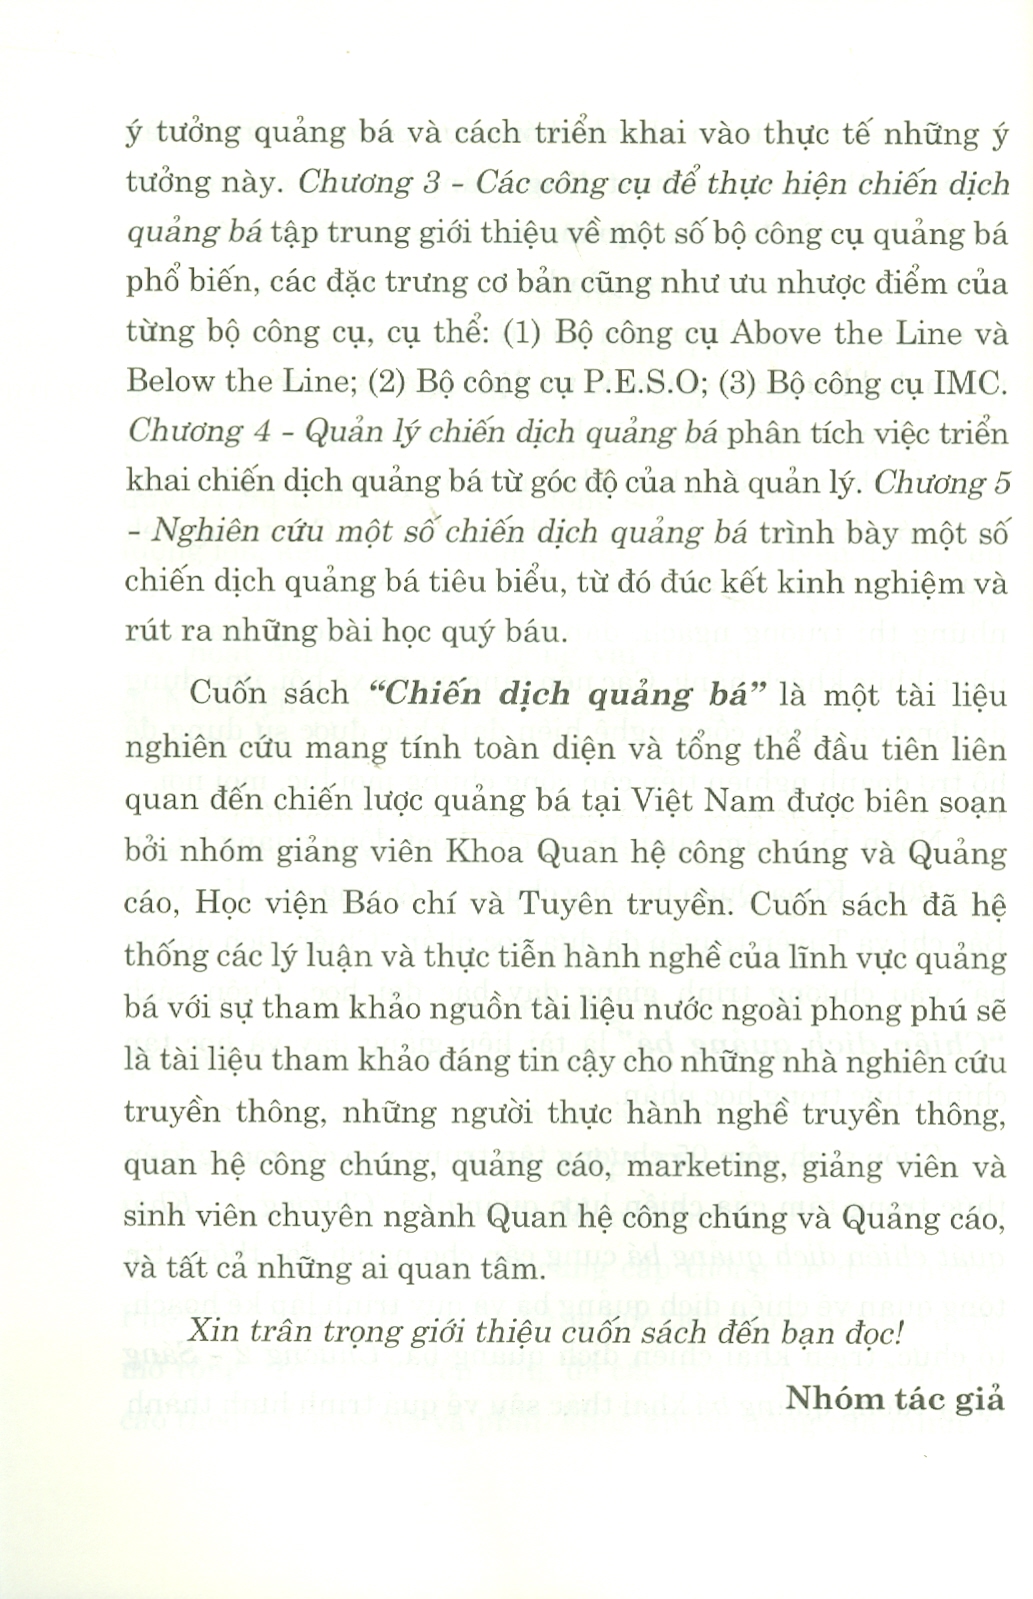 (Giáo trình) Chiến dịch quảng bá - TS Nguyến Thị Minh Hiền - (Học Viện Báo Chí Và Tuyên Truyền) - (bìa mềm)